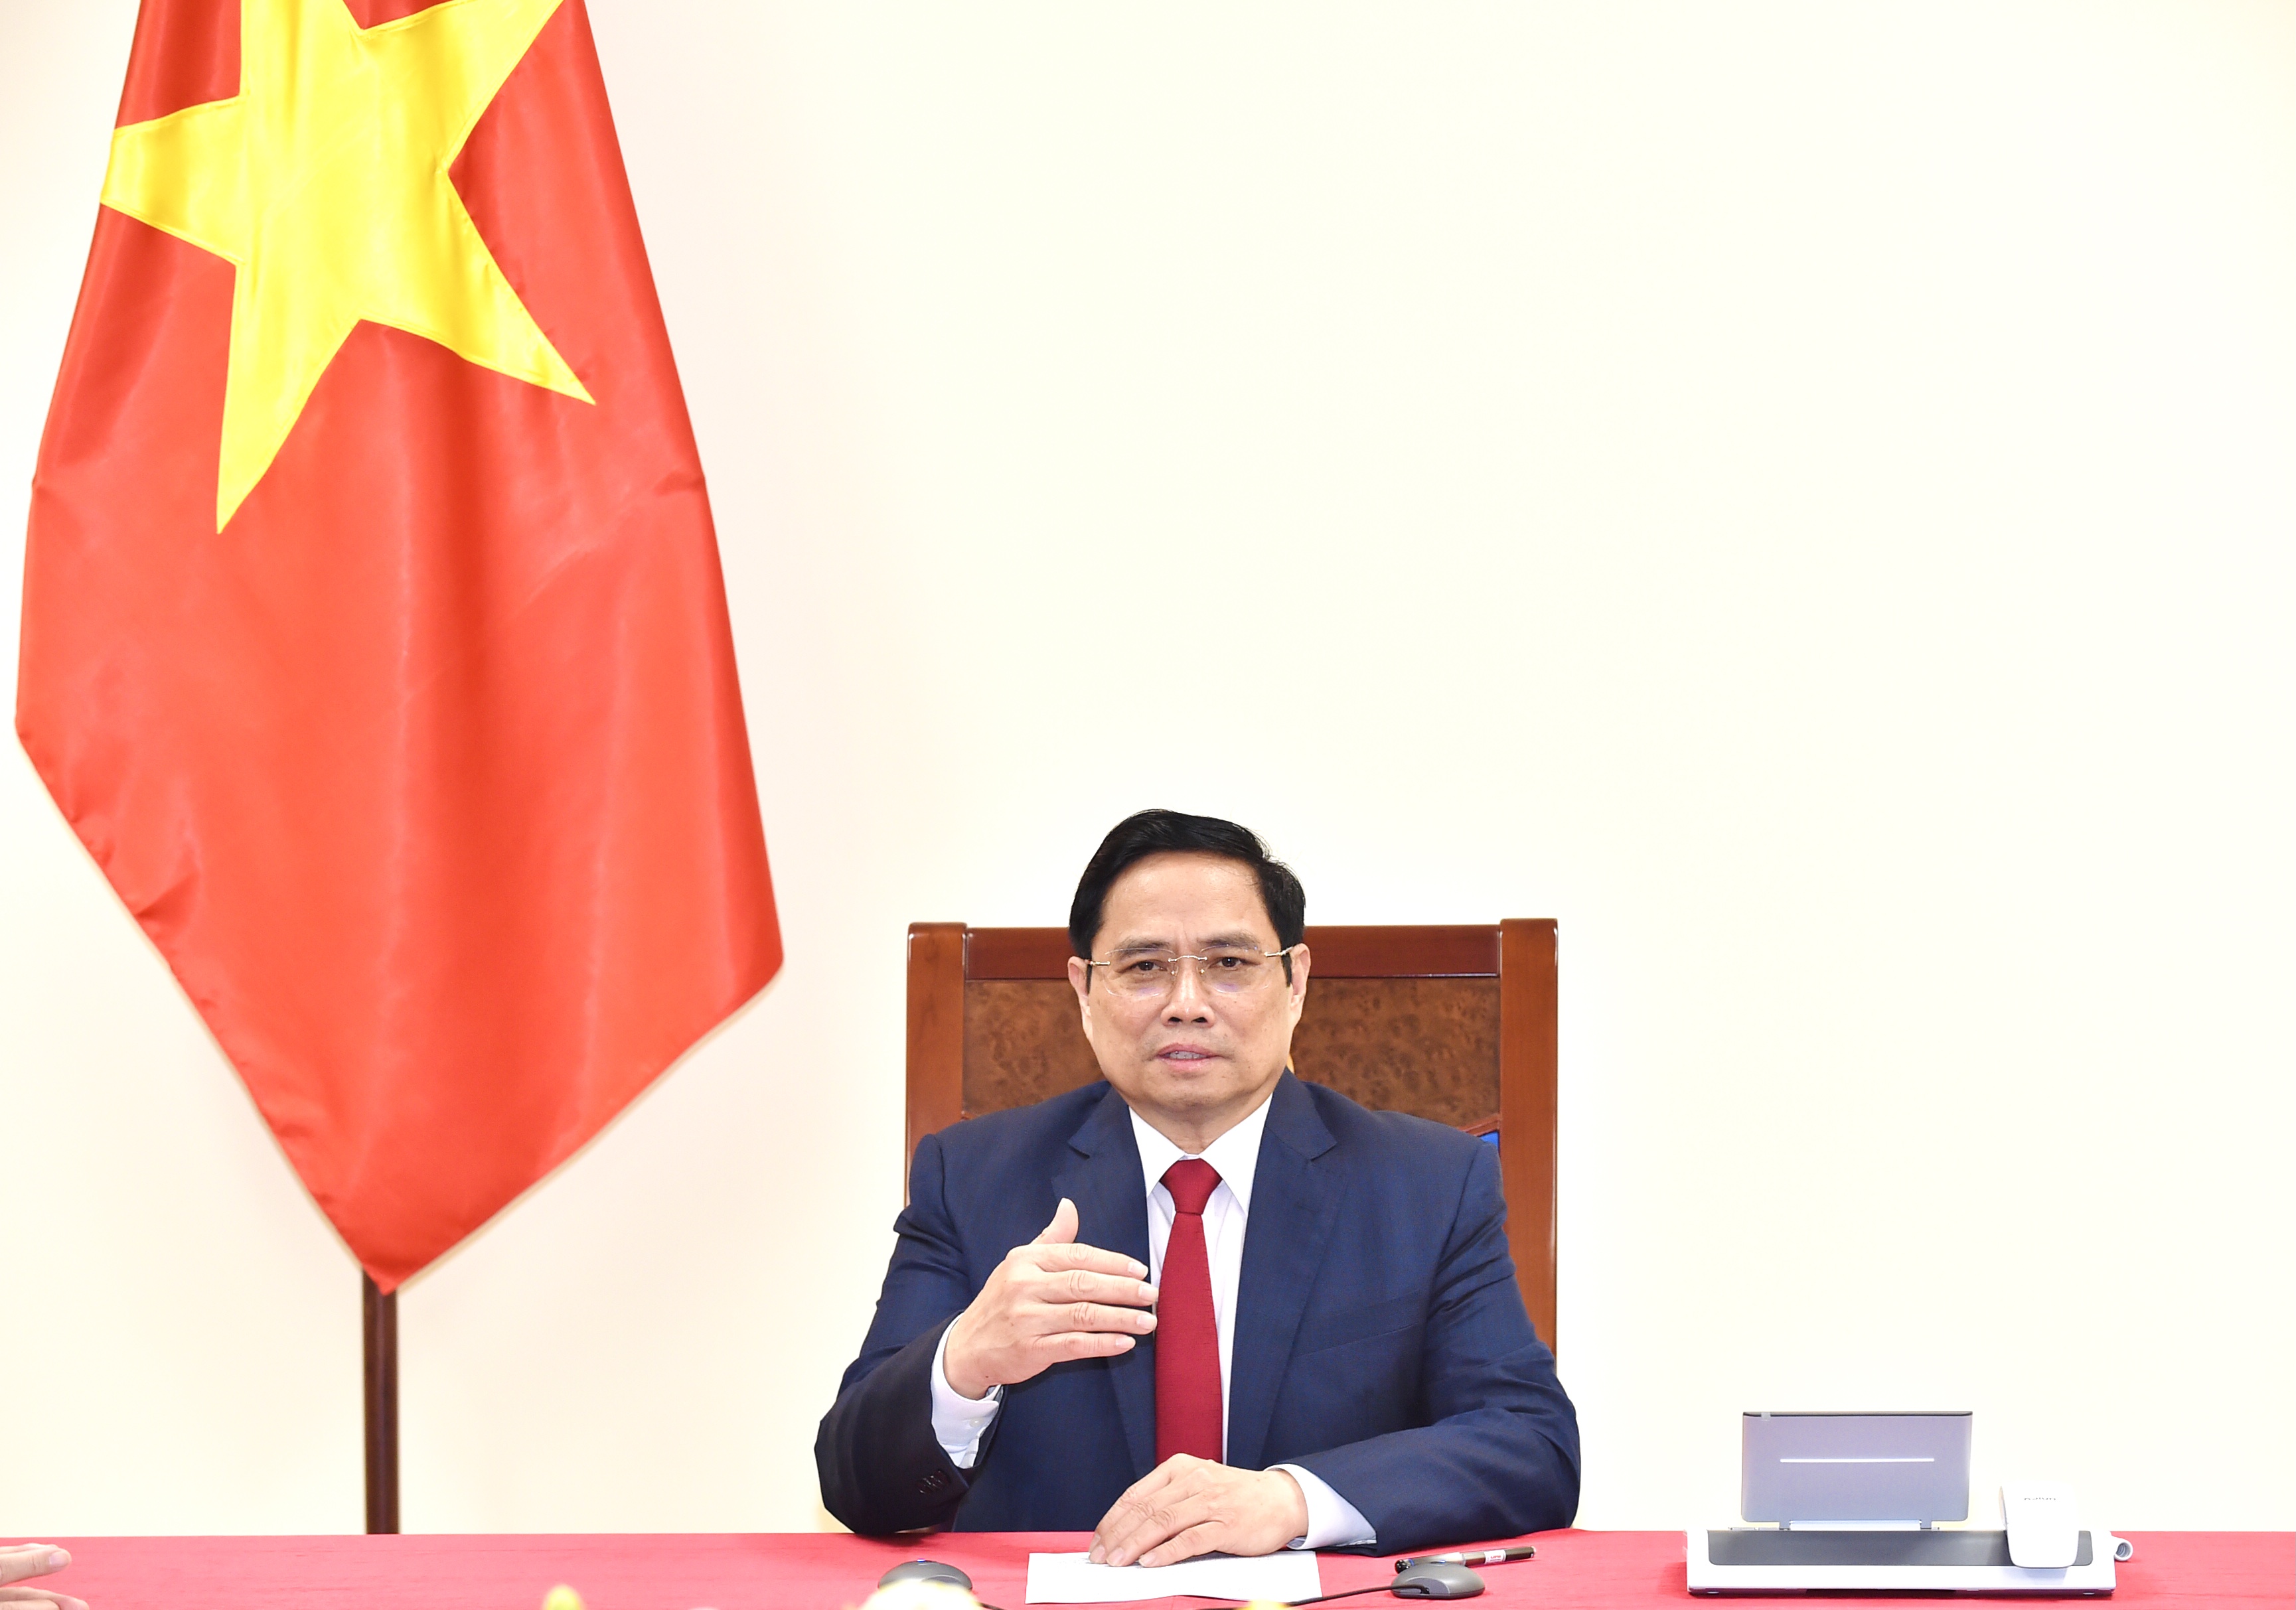 Thủ tướng Phạm Minh Chính đề nghị WHO ủng hộ và hỗ trợ Việt Nam trở thành một trong những trung tâm sản xuất vắc xin cho khu vực  Tây Thái Bình Dương. Ảnh: NHẬT BẮC